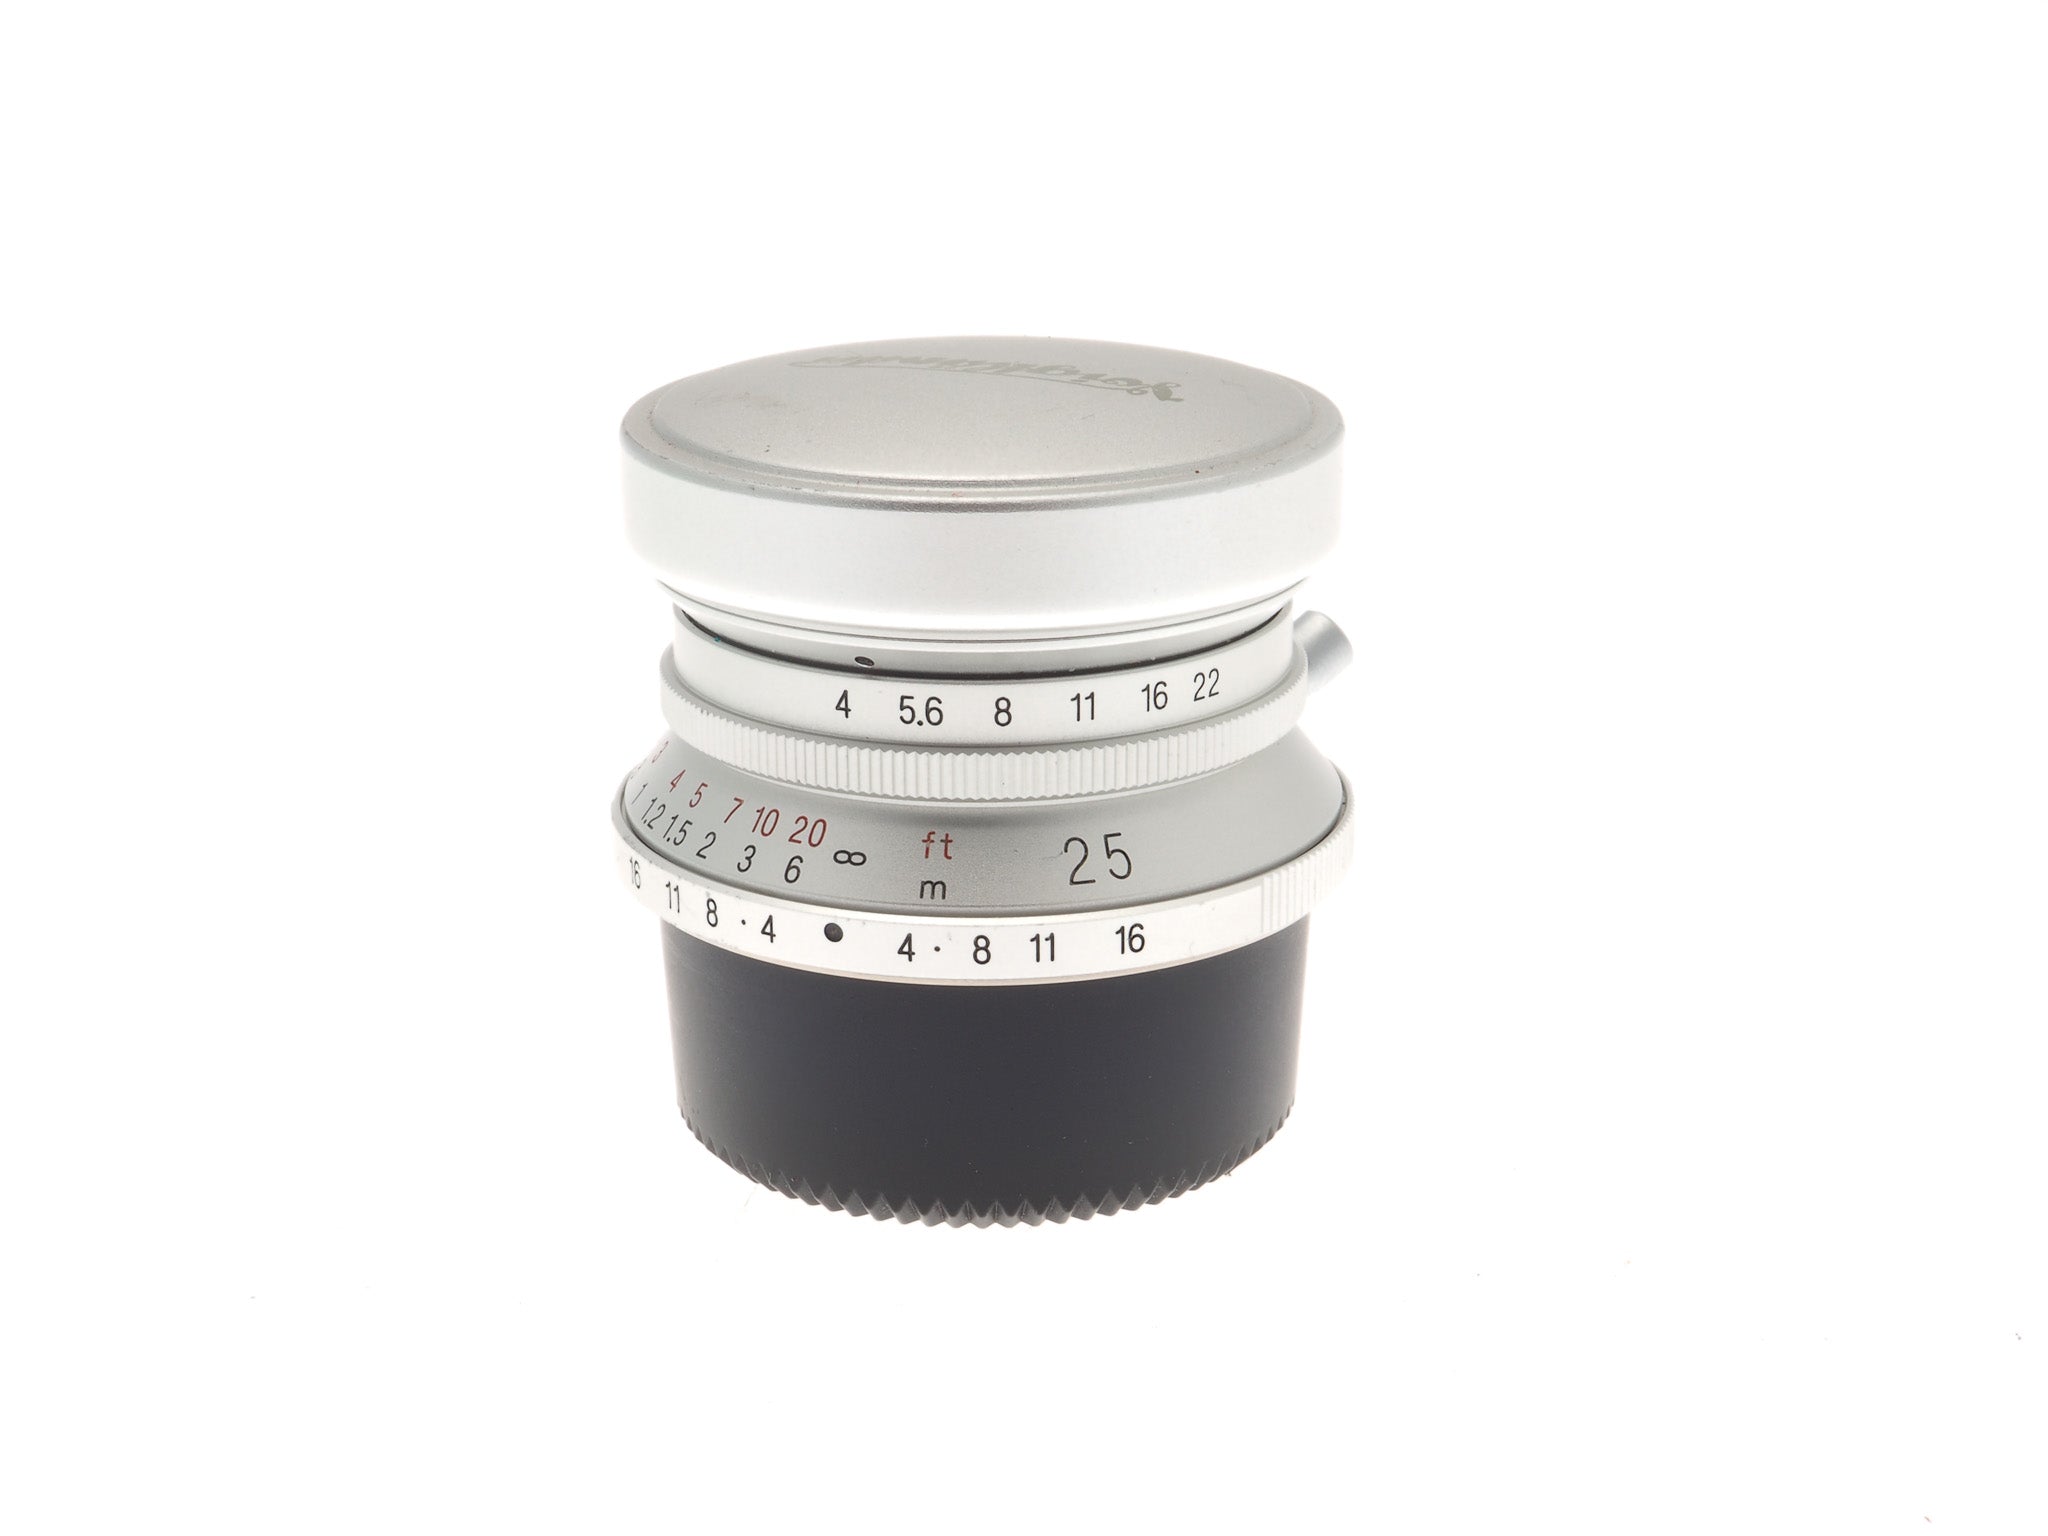 Voigtländer 25mm f4 MC Snapshot-Skopar - Lens